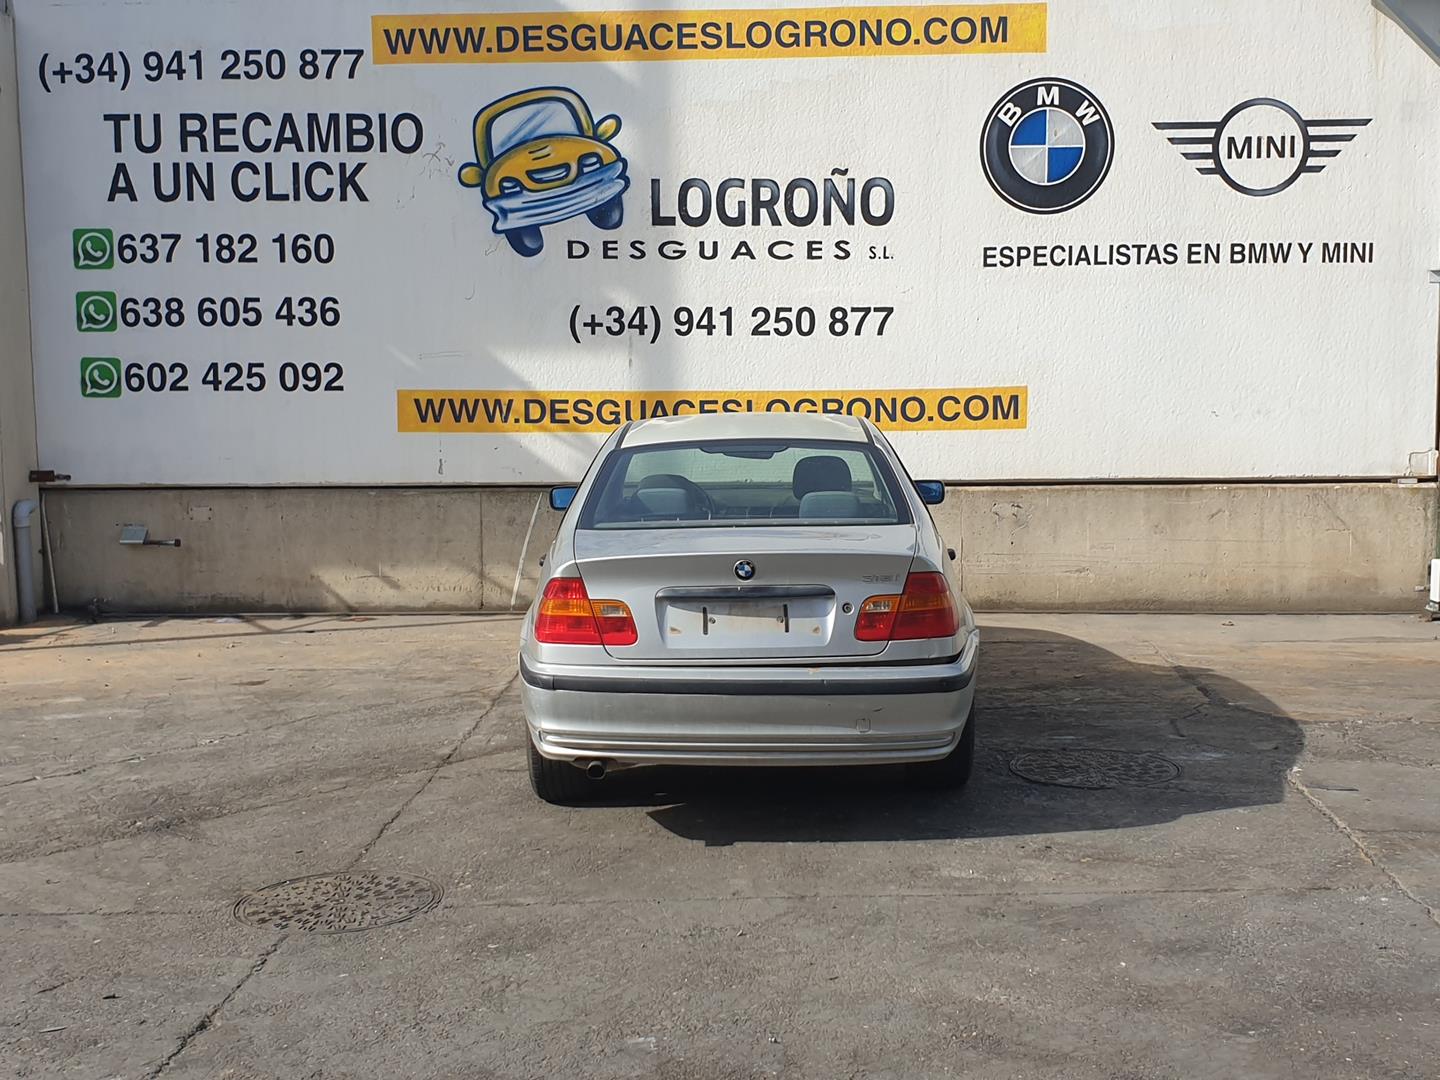 BMW 3 Series E46 (1997-2006) поворота переключение  61318363668, 8363668 19932221